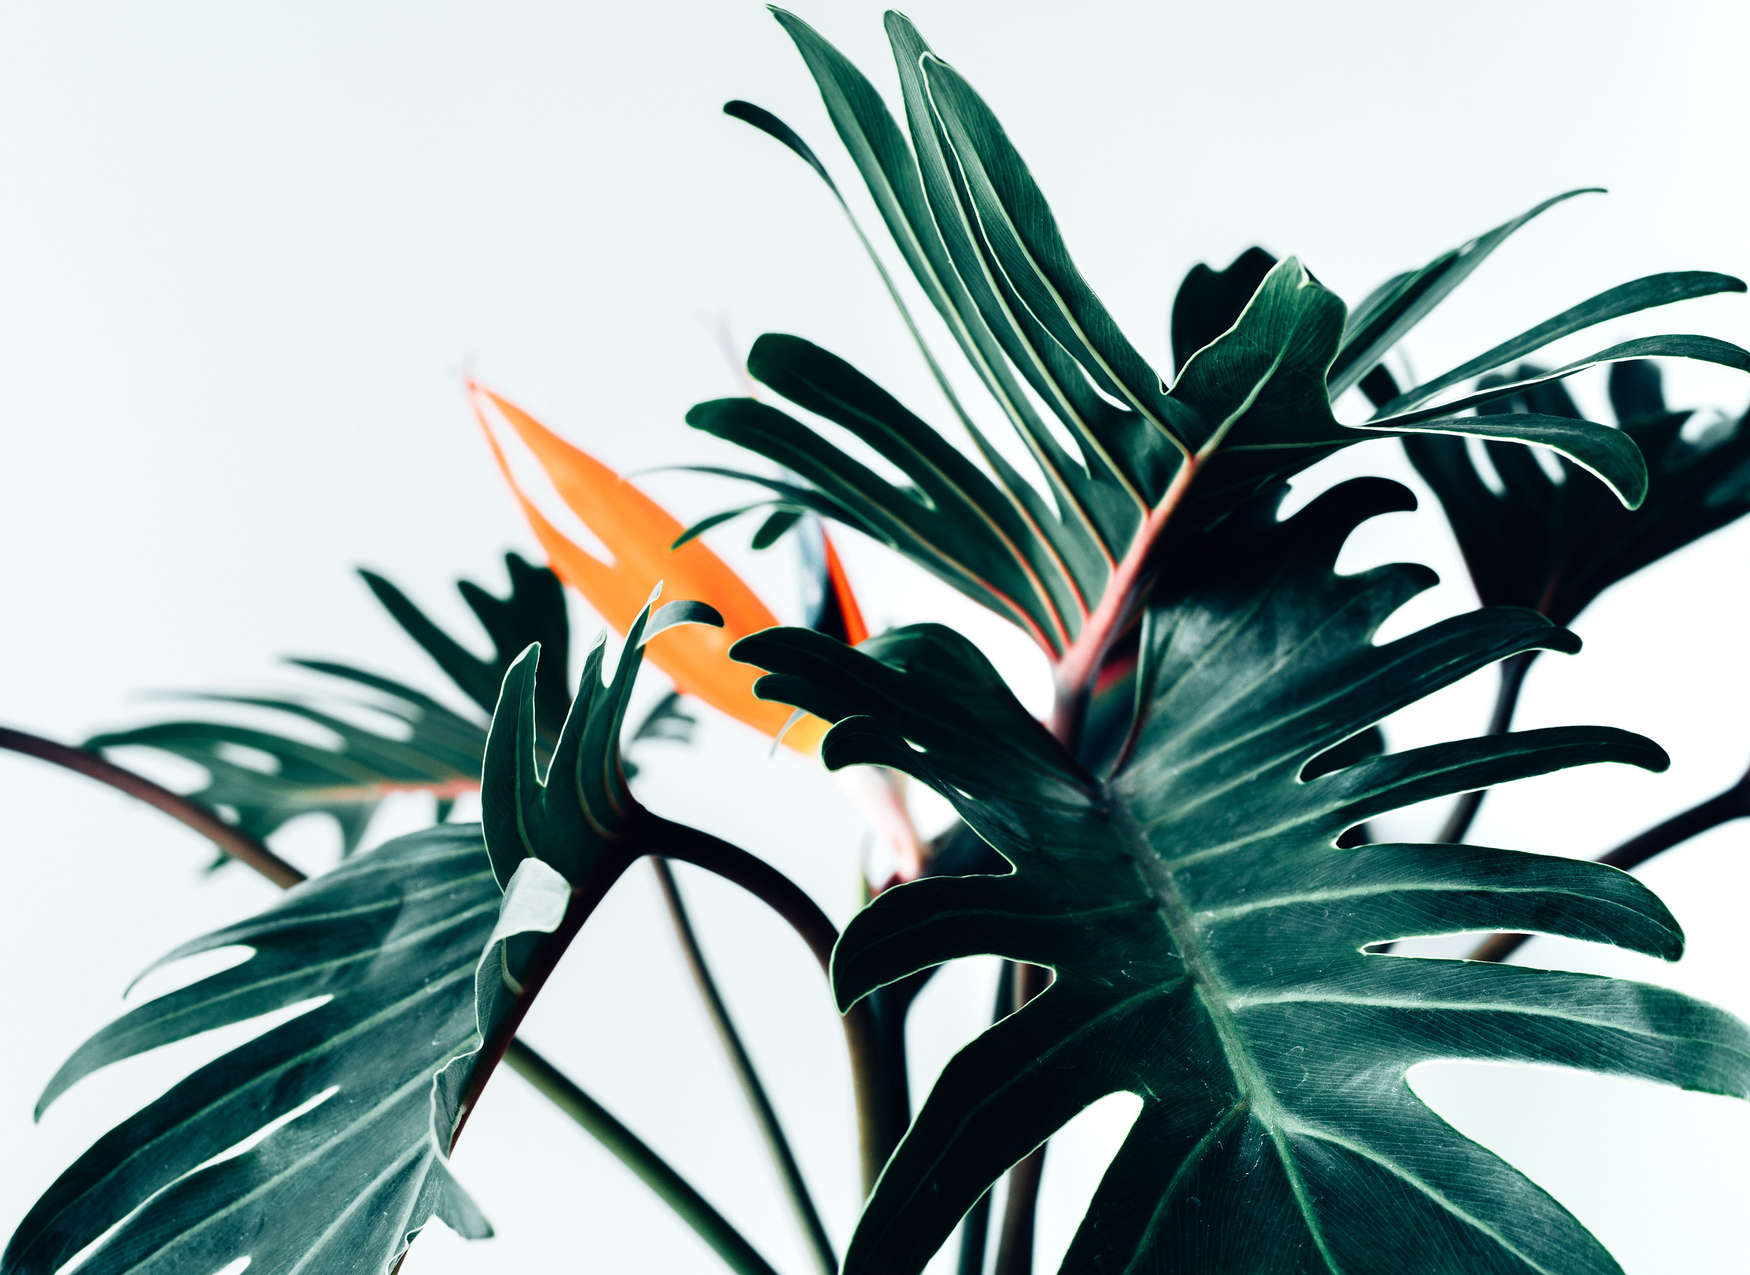             Digital behang tropisch oerwoudblad close-up - groen, oranje, wit
        